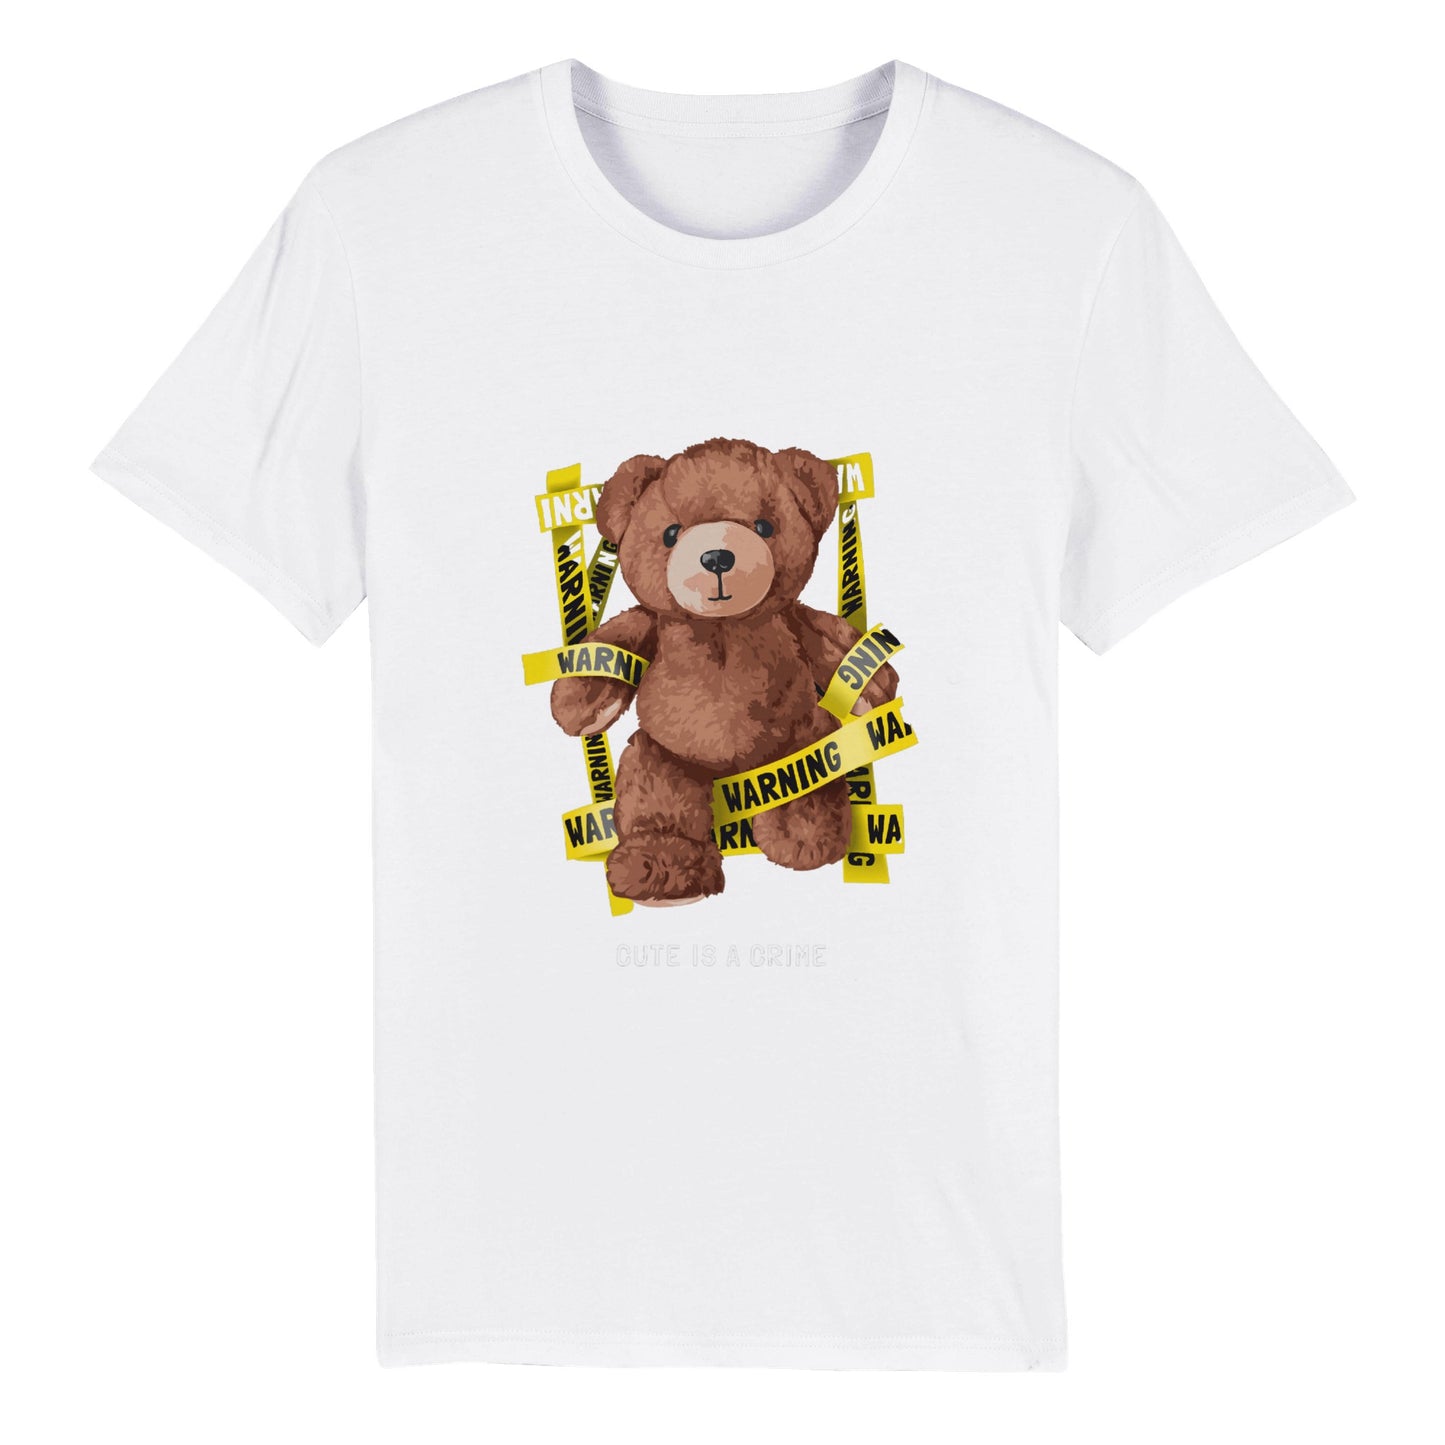 100% Organic Unisex T-shirt/Cute-Is-A-Crime